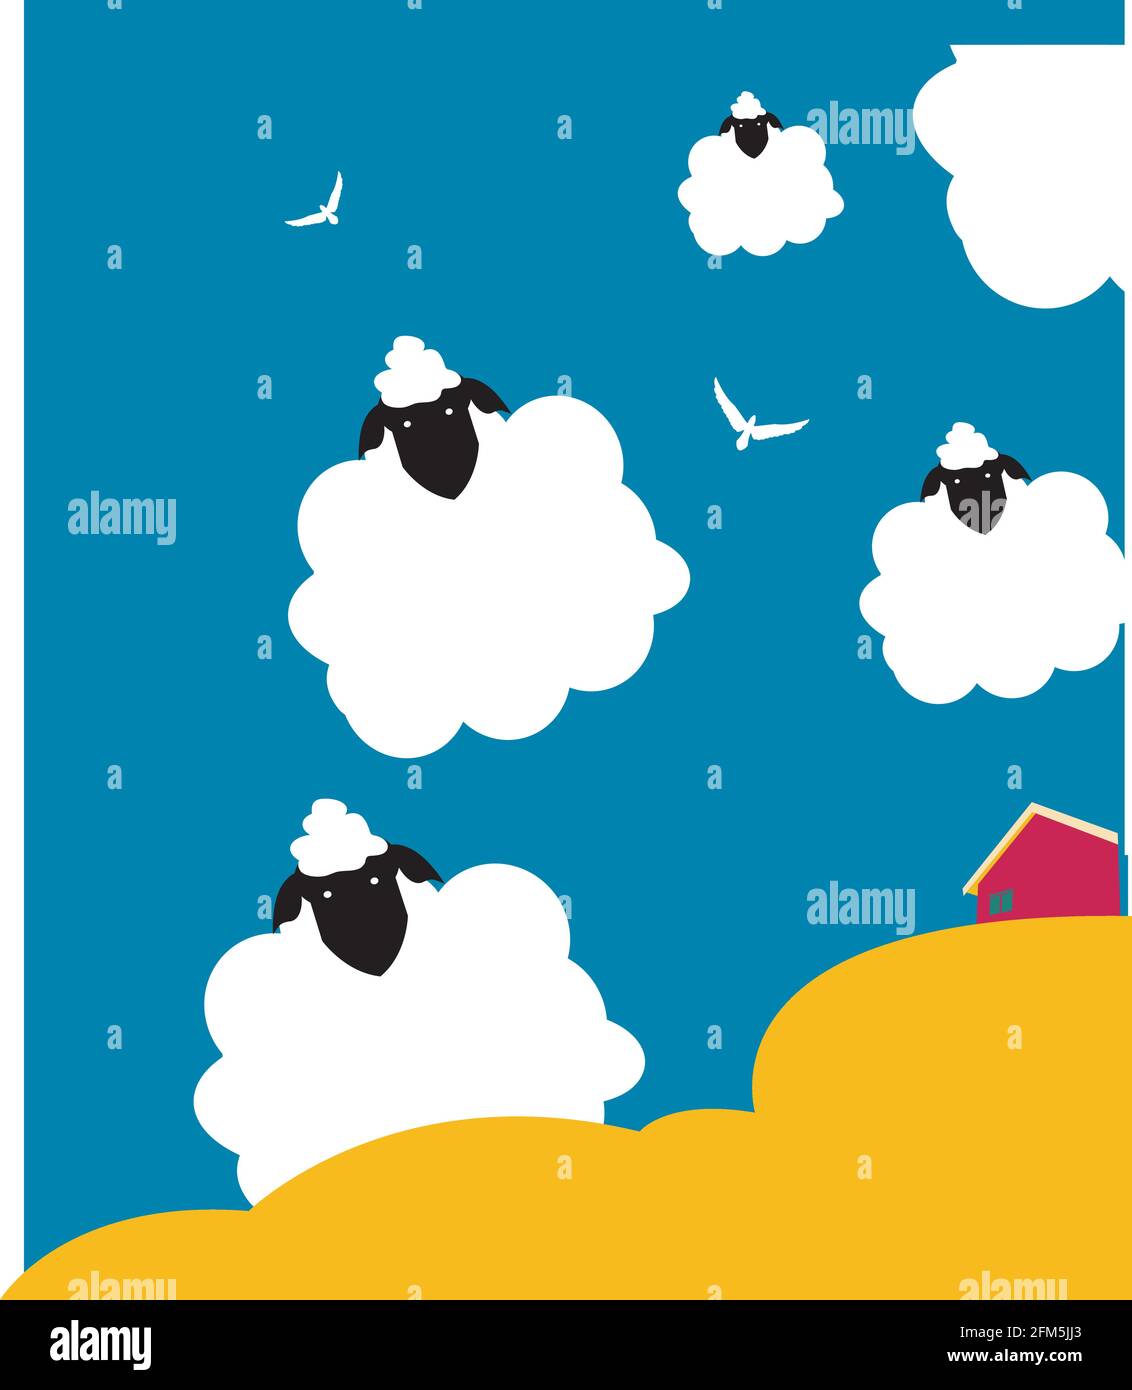 illustrazione di diversi fogli come nuvole su una landcsape gialla con una casa rosa Illustrazione Vettoriale